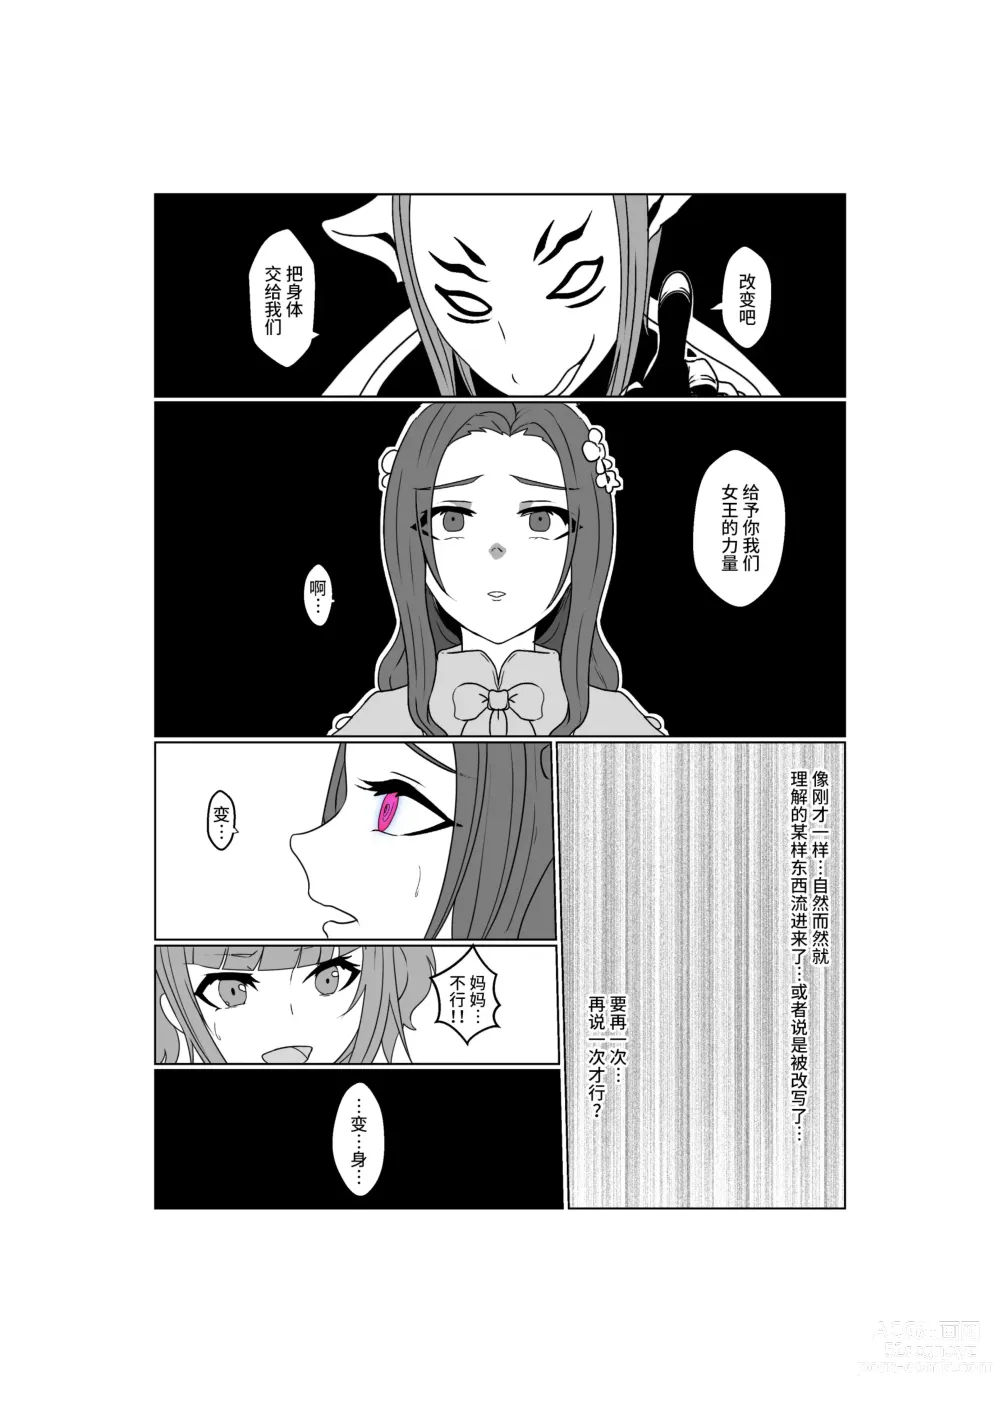 Page 63 of doujinshi Aku no Hana Vol.3 Skeb+α Matome